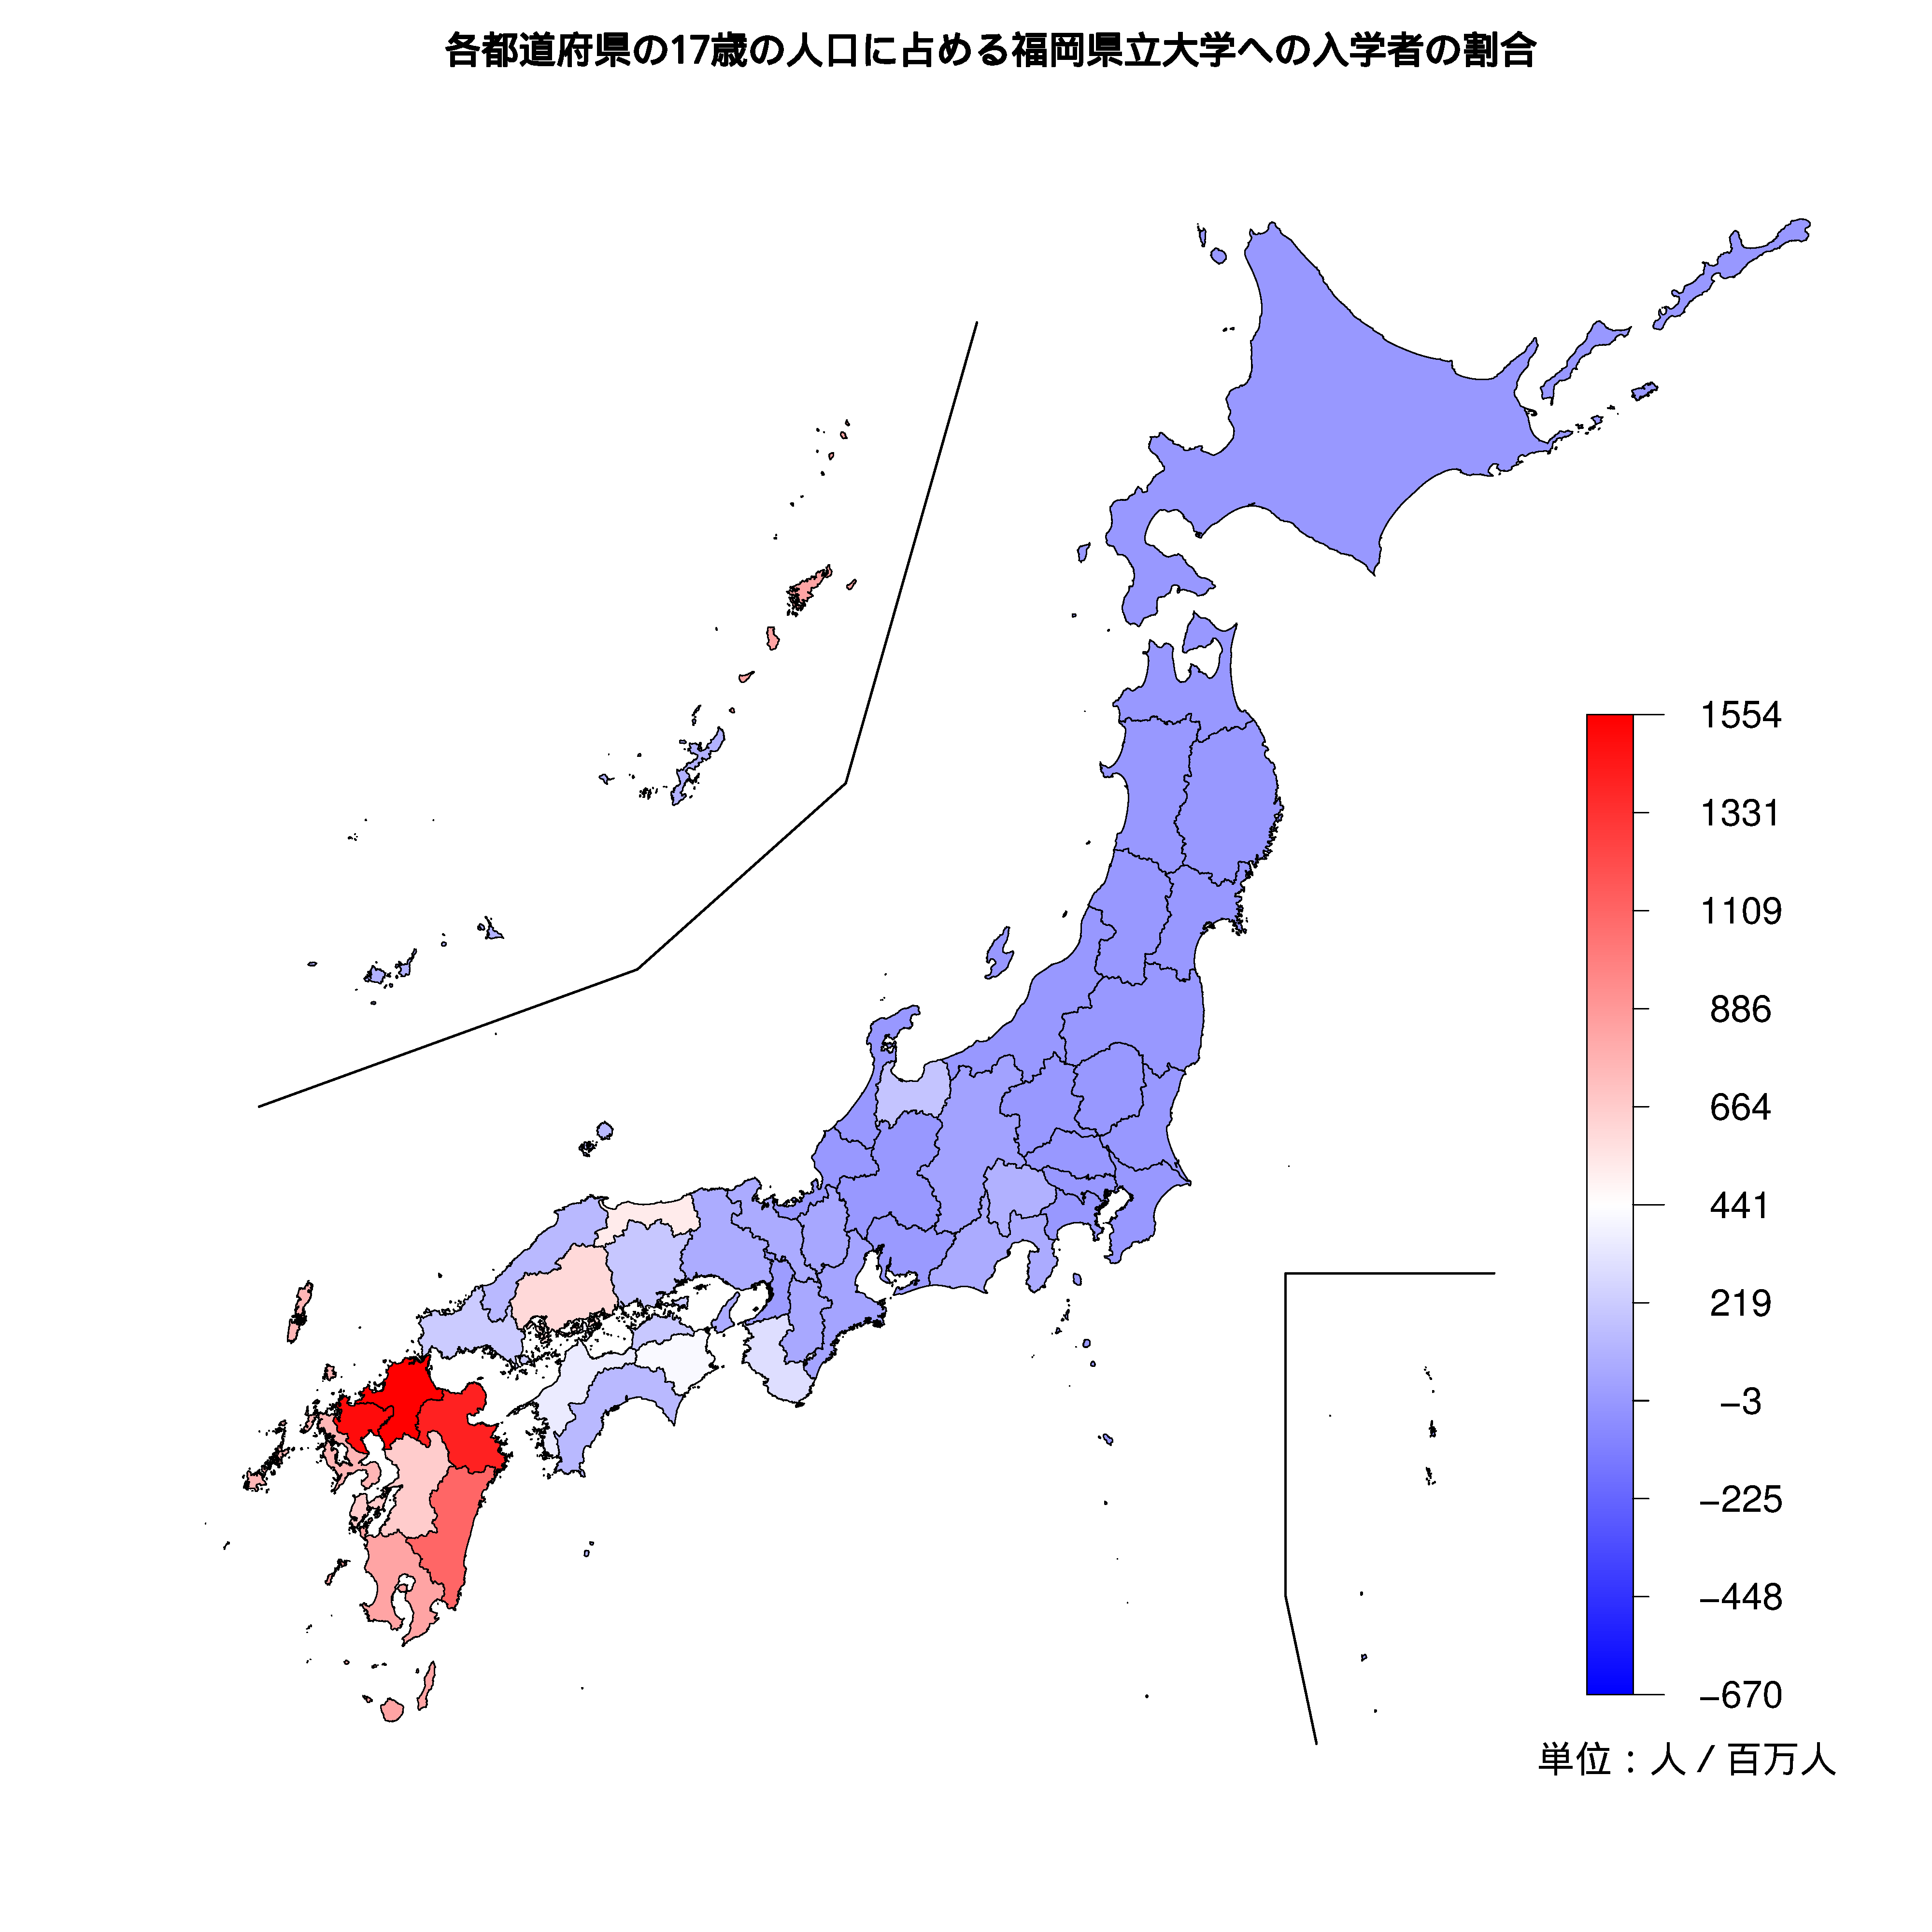 福岡県立大学への入学者が多い都道府県の色分け地図